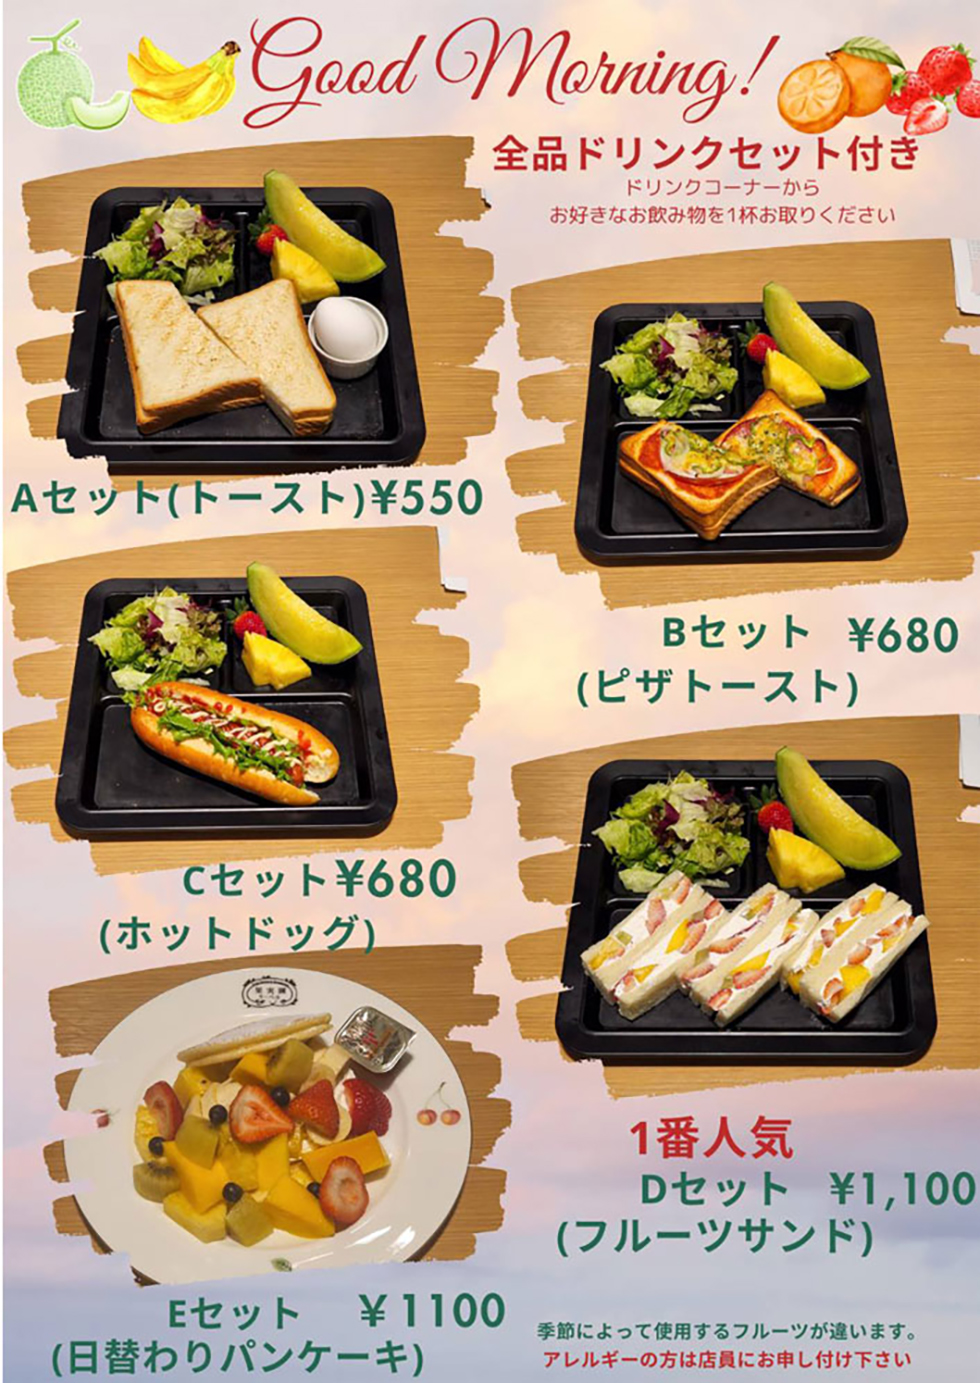 飯田橋店の食事メニューモーニング